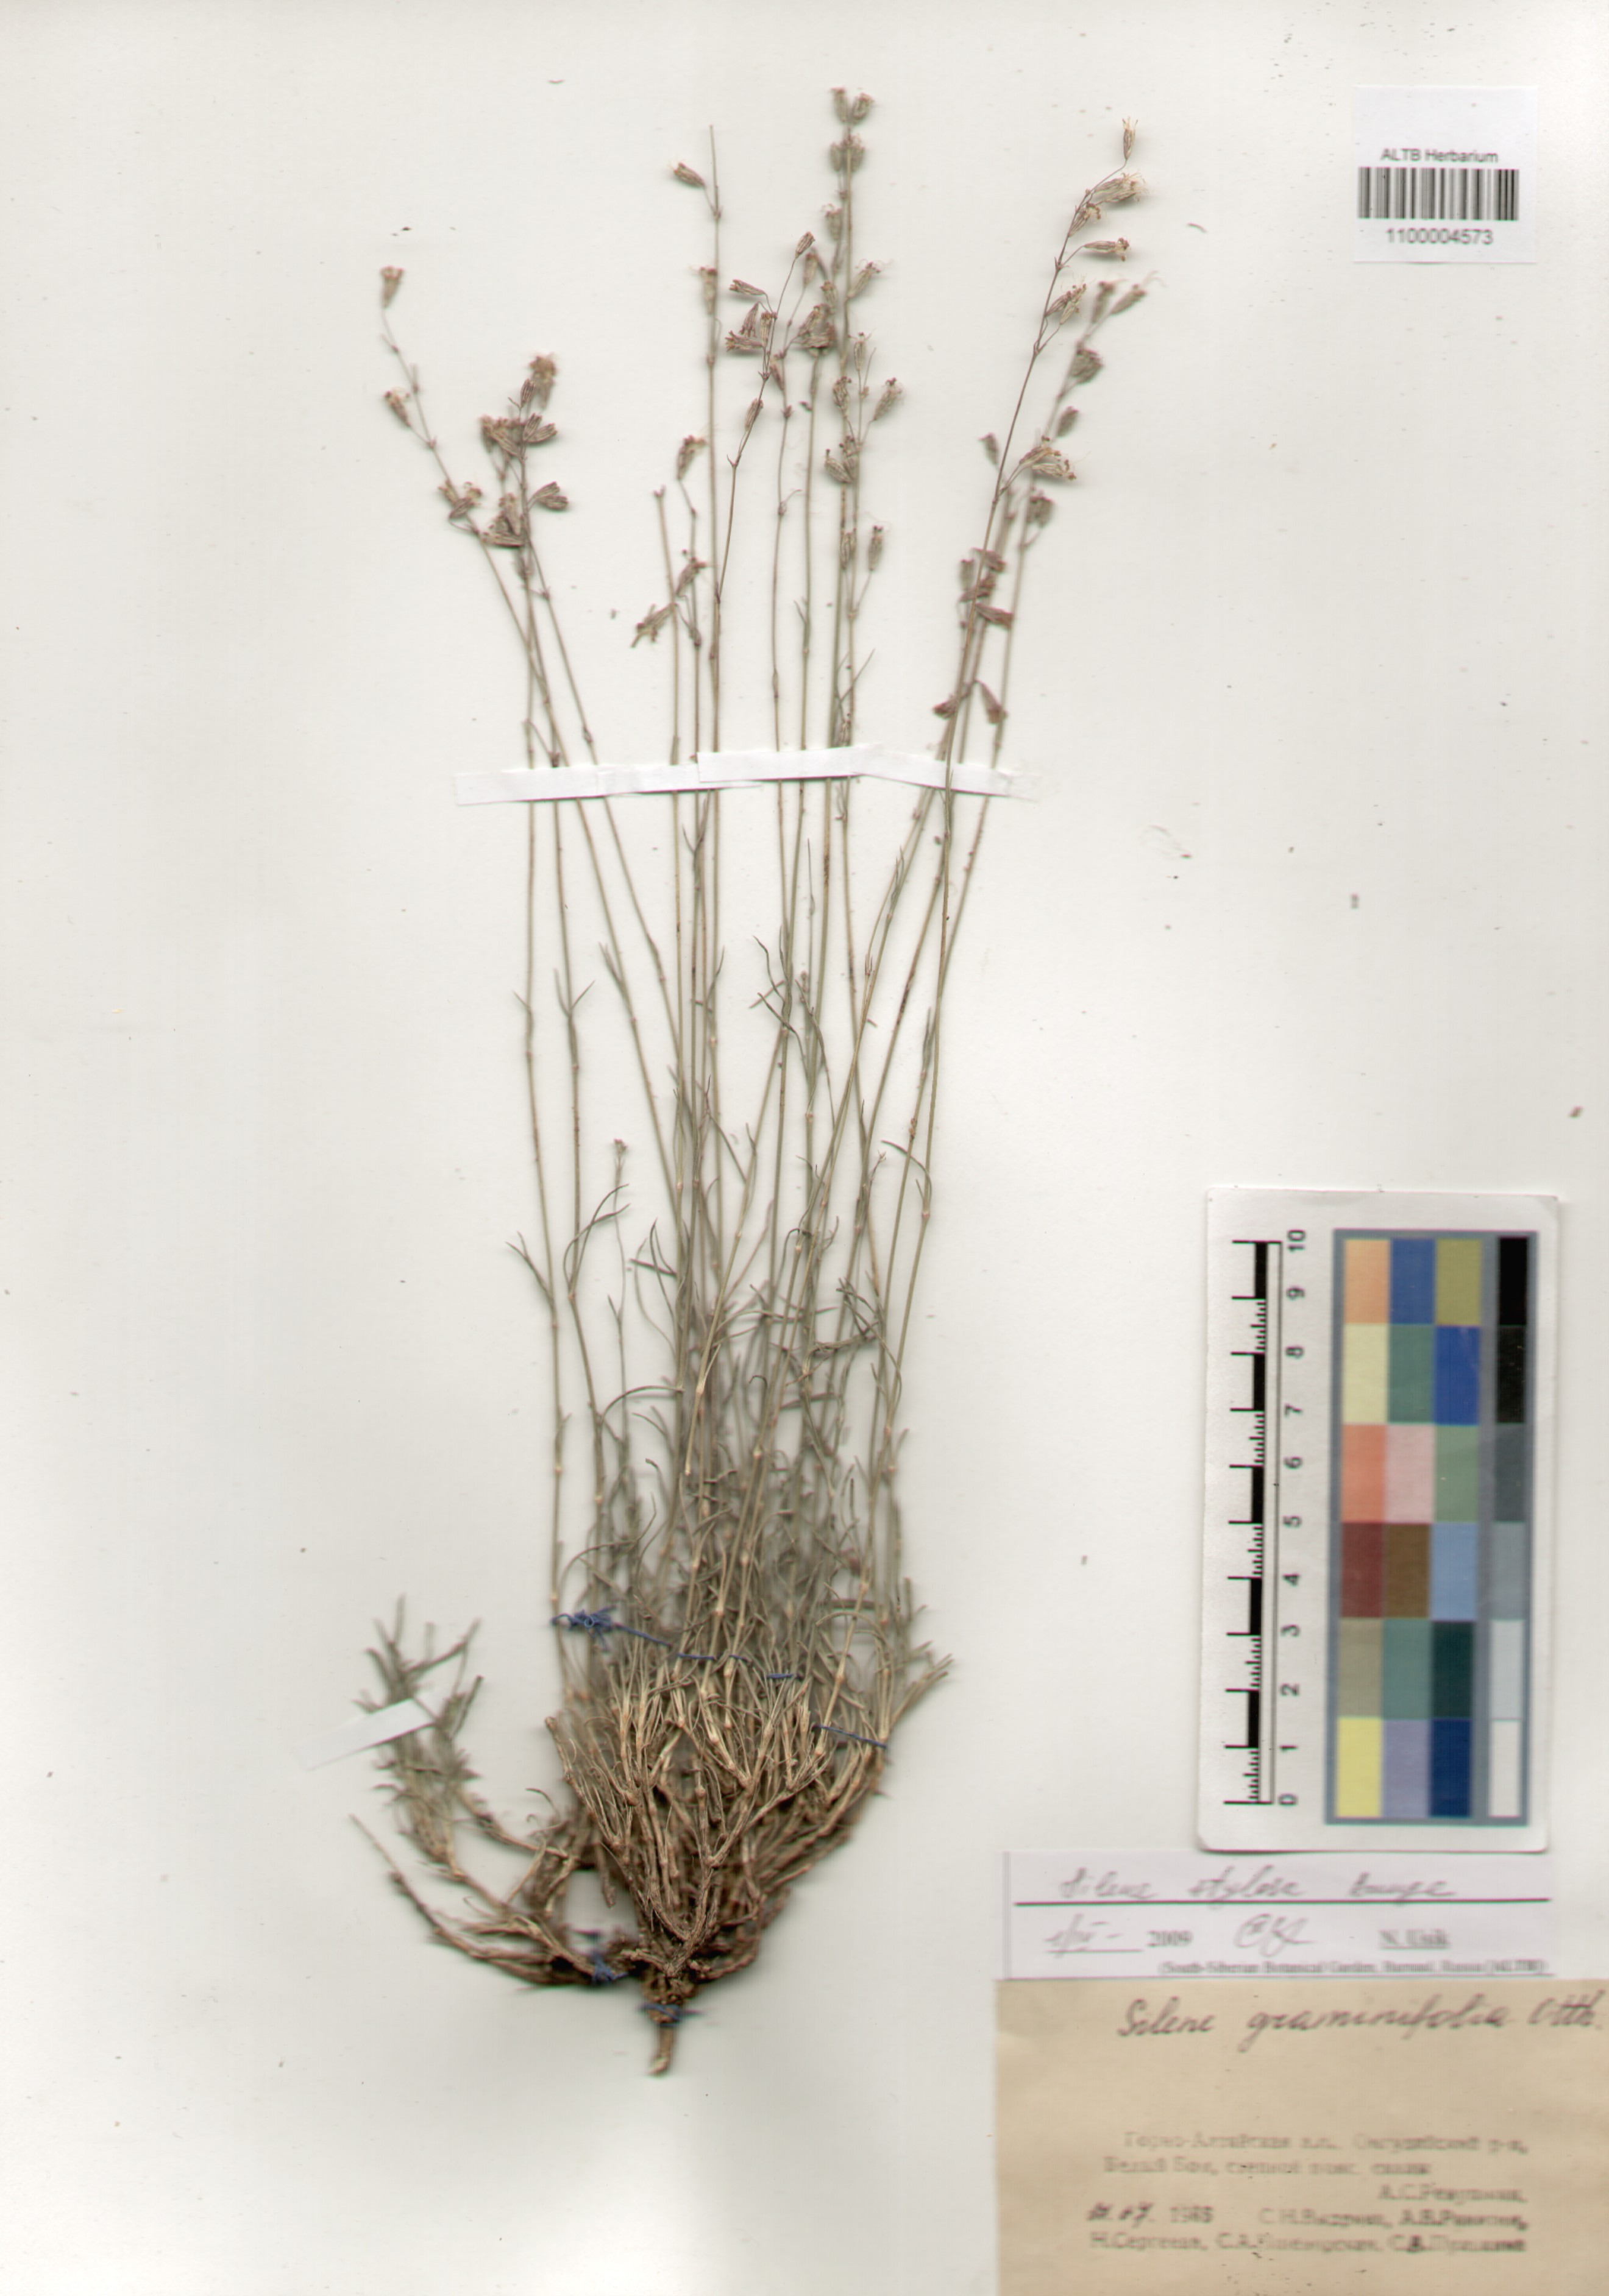 Caryophyllaceae,Silene stylosa Bunge.